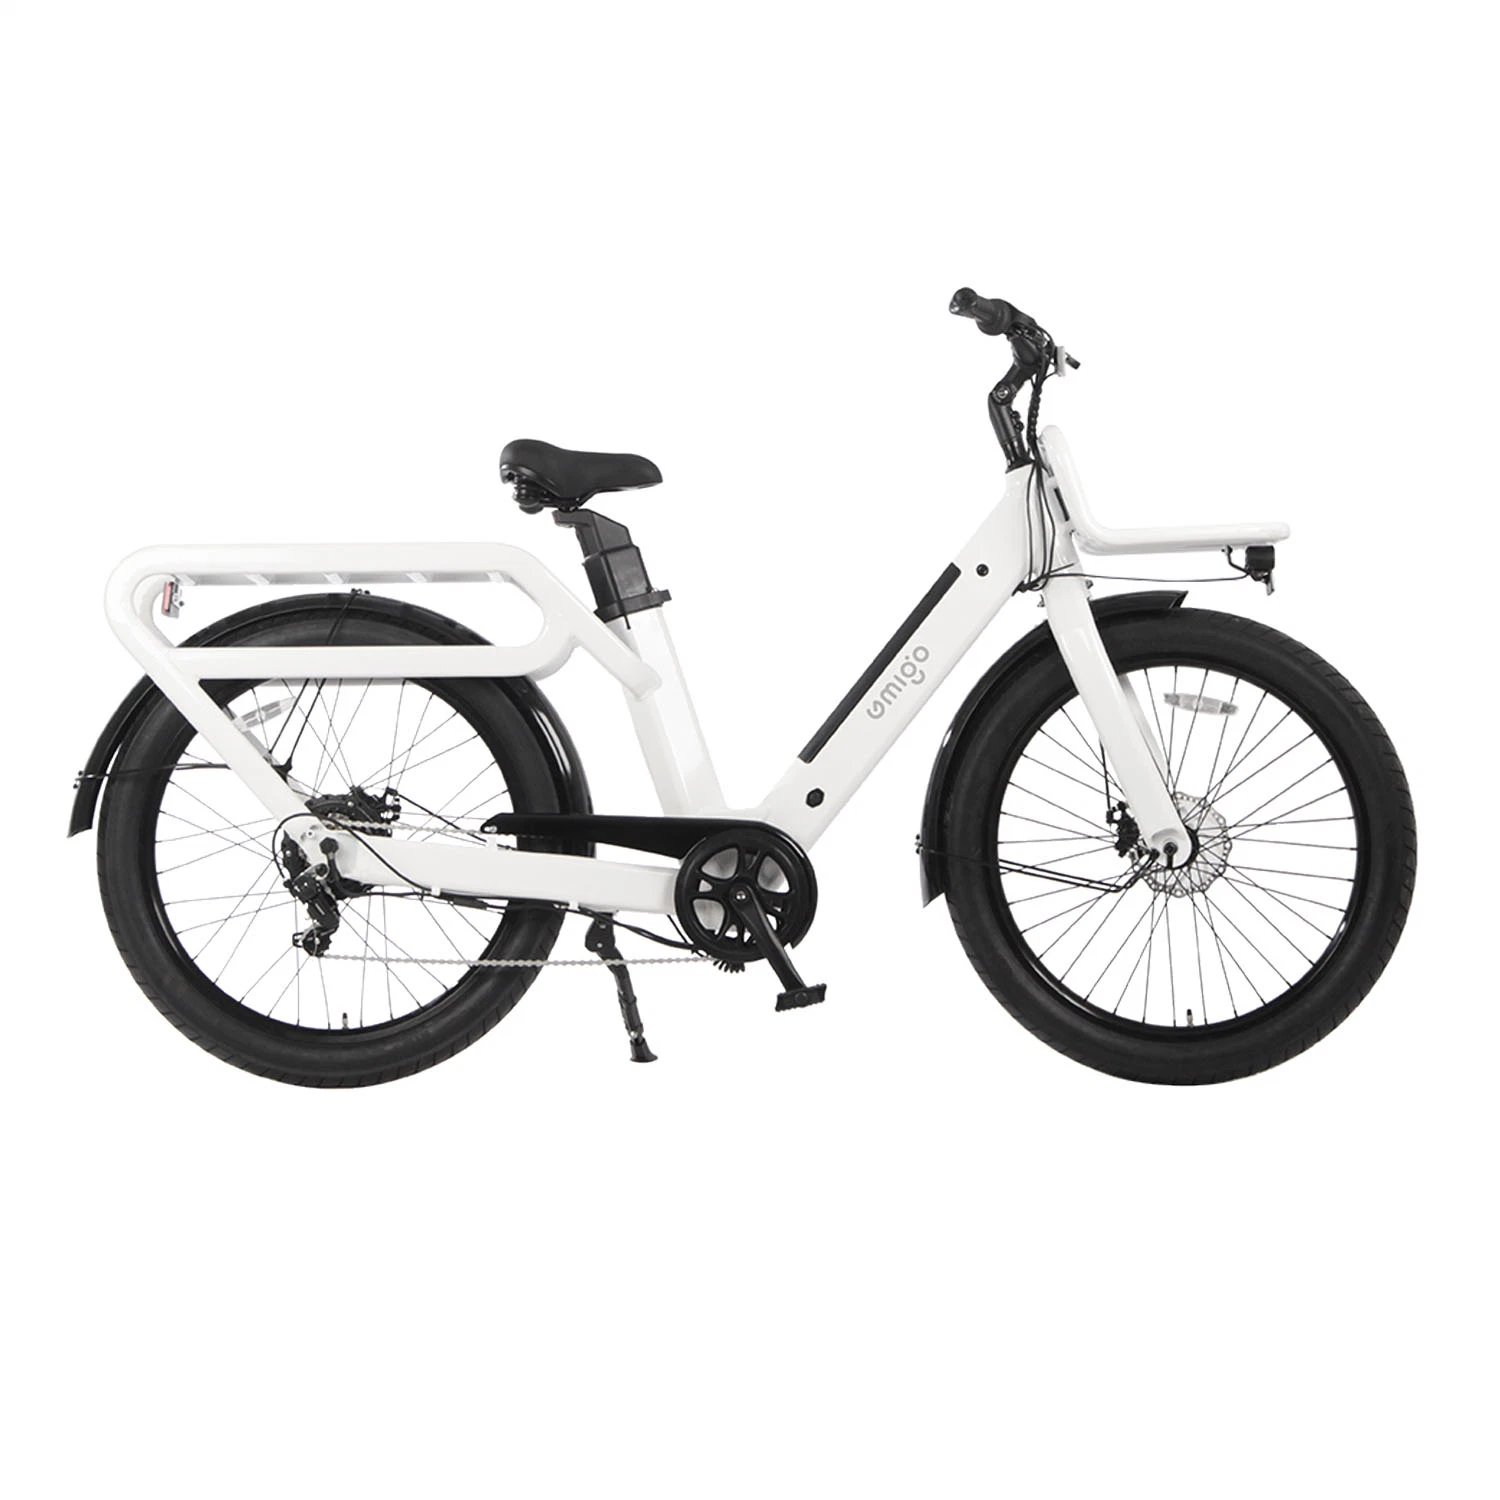 Preço barato de fábrica E Bike Wagon 48V 27ah 500W Big Power Bike para entrega de pneu gordo com triciclo elétrico de viagem longa